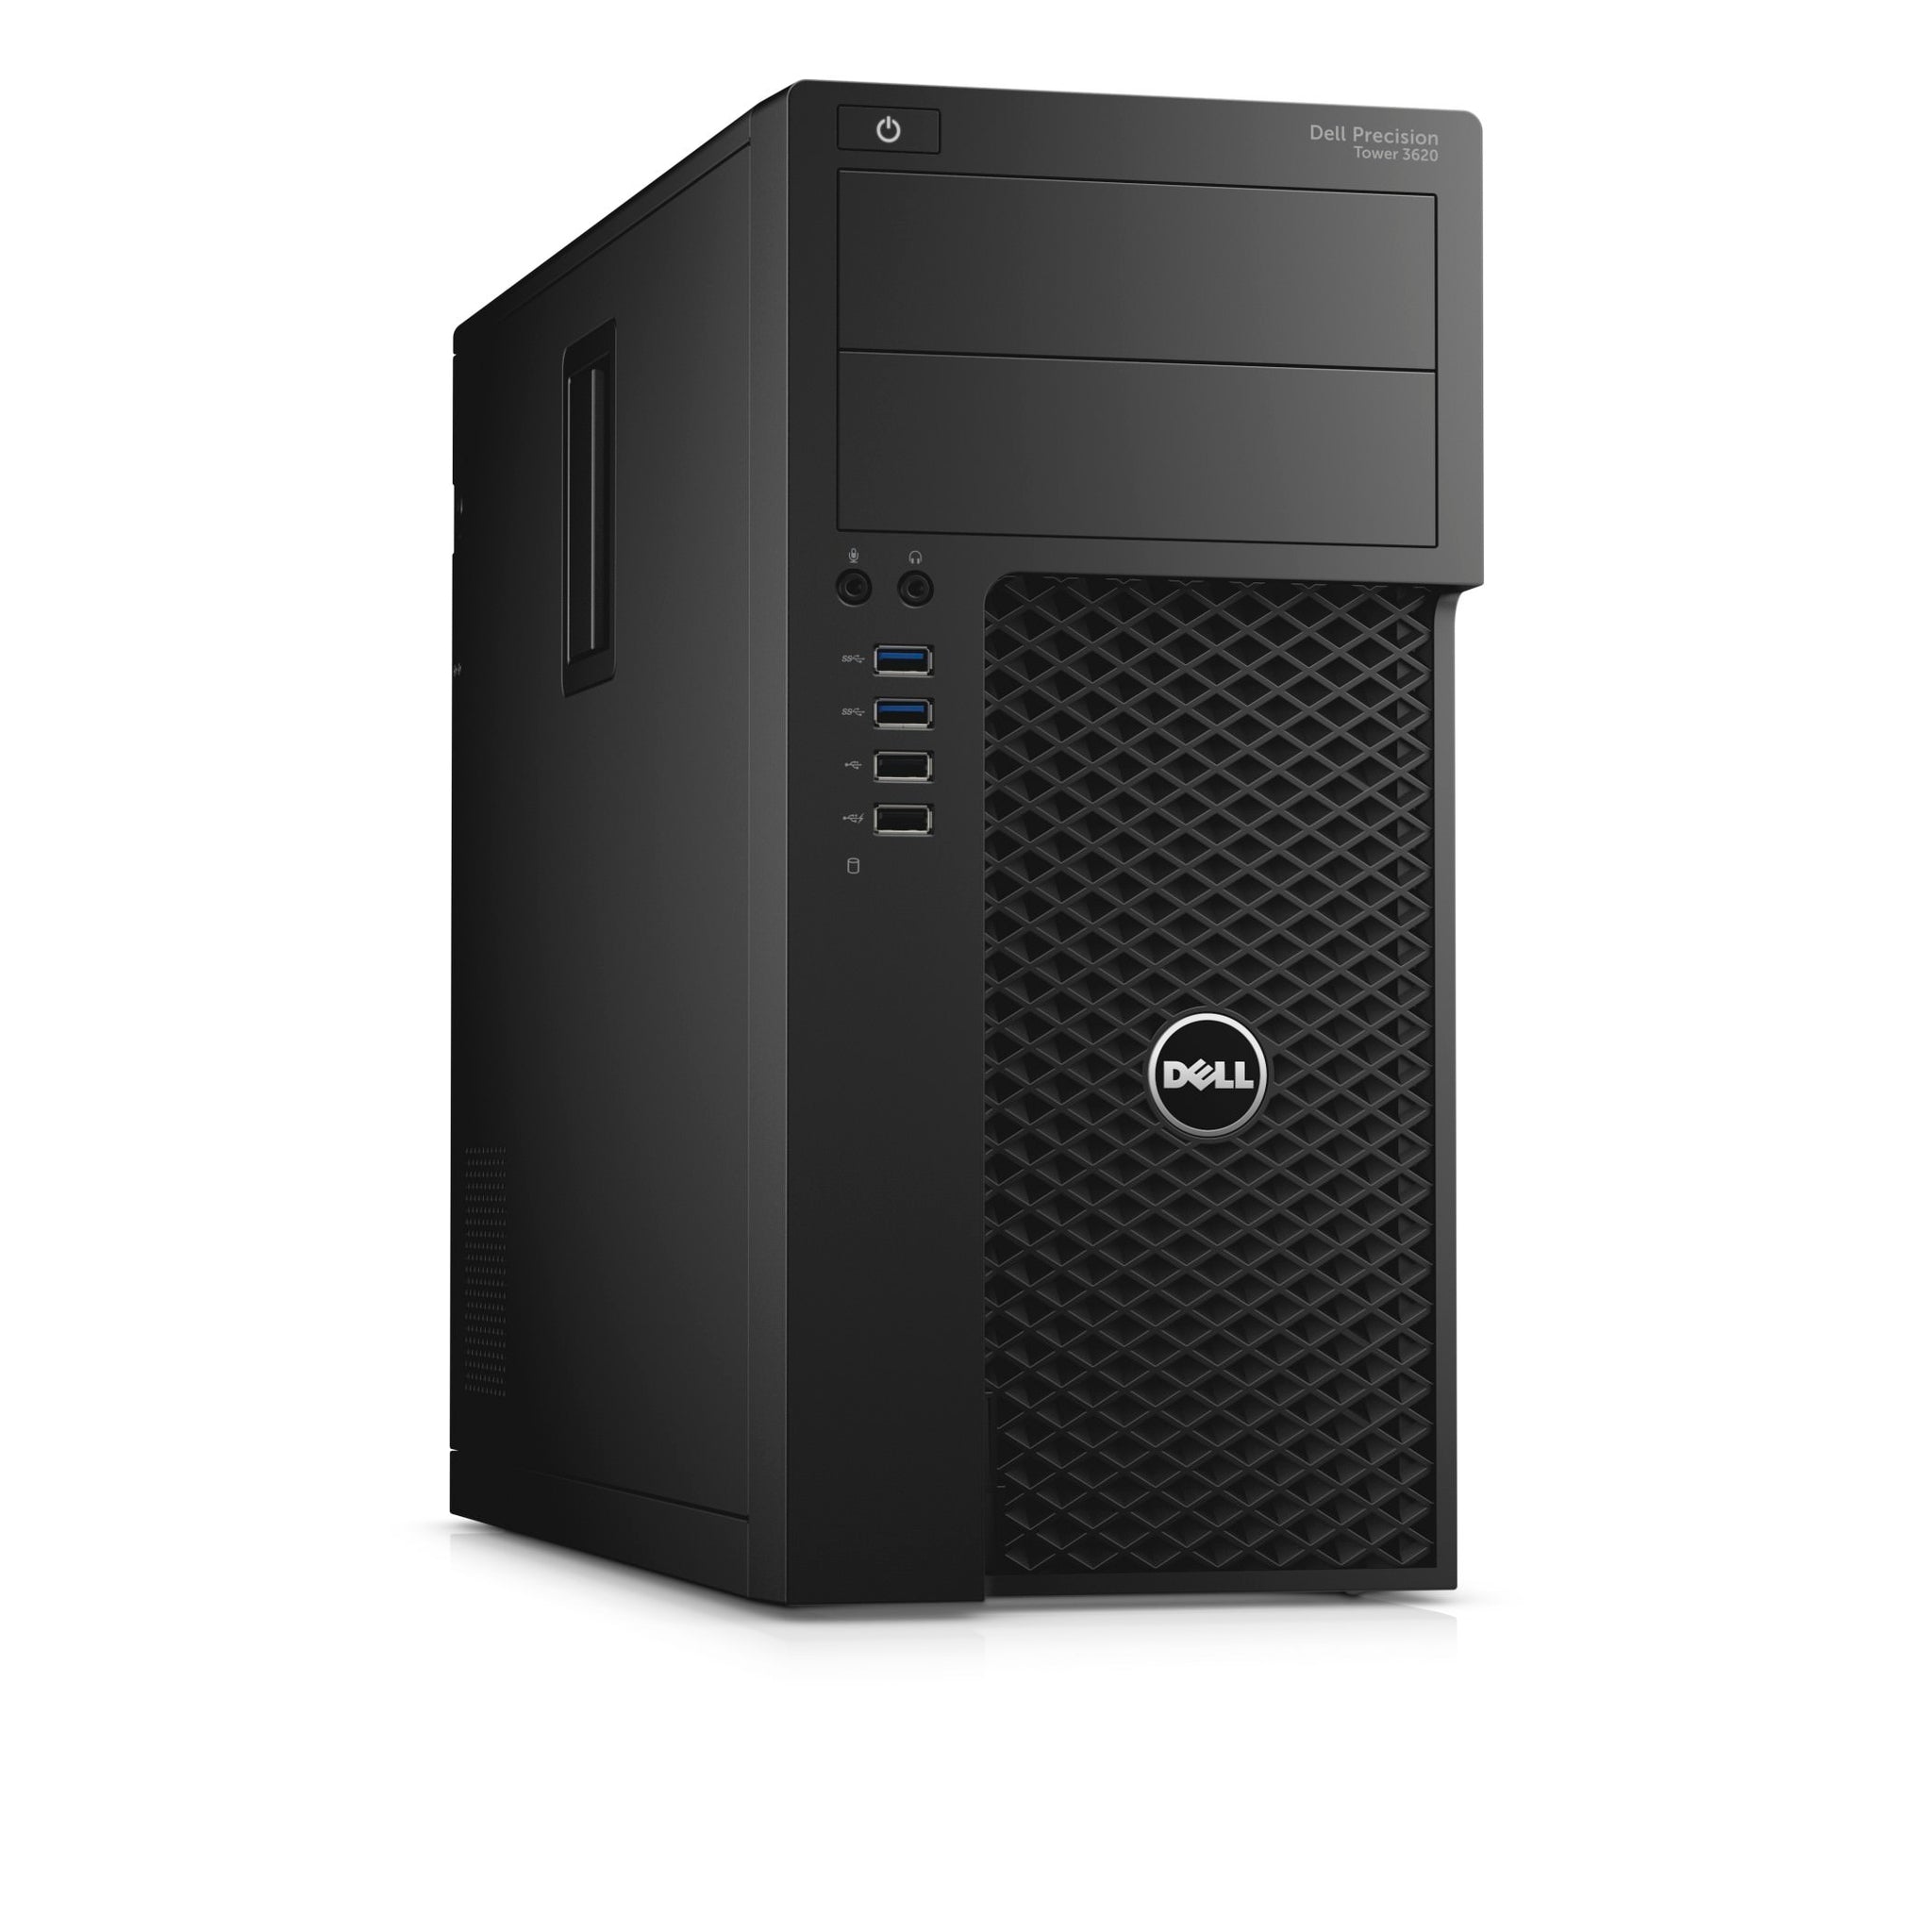 Dell Precision Tower 3620, Intel Core i7-6700, 3.40 GHz, 8GB RAM ...